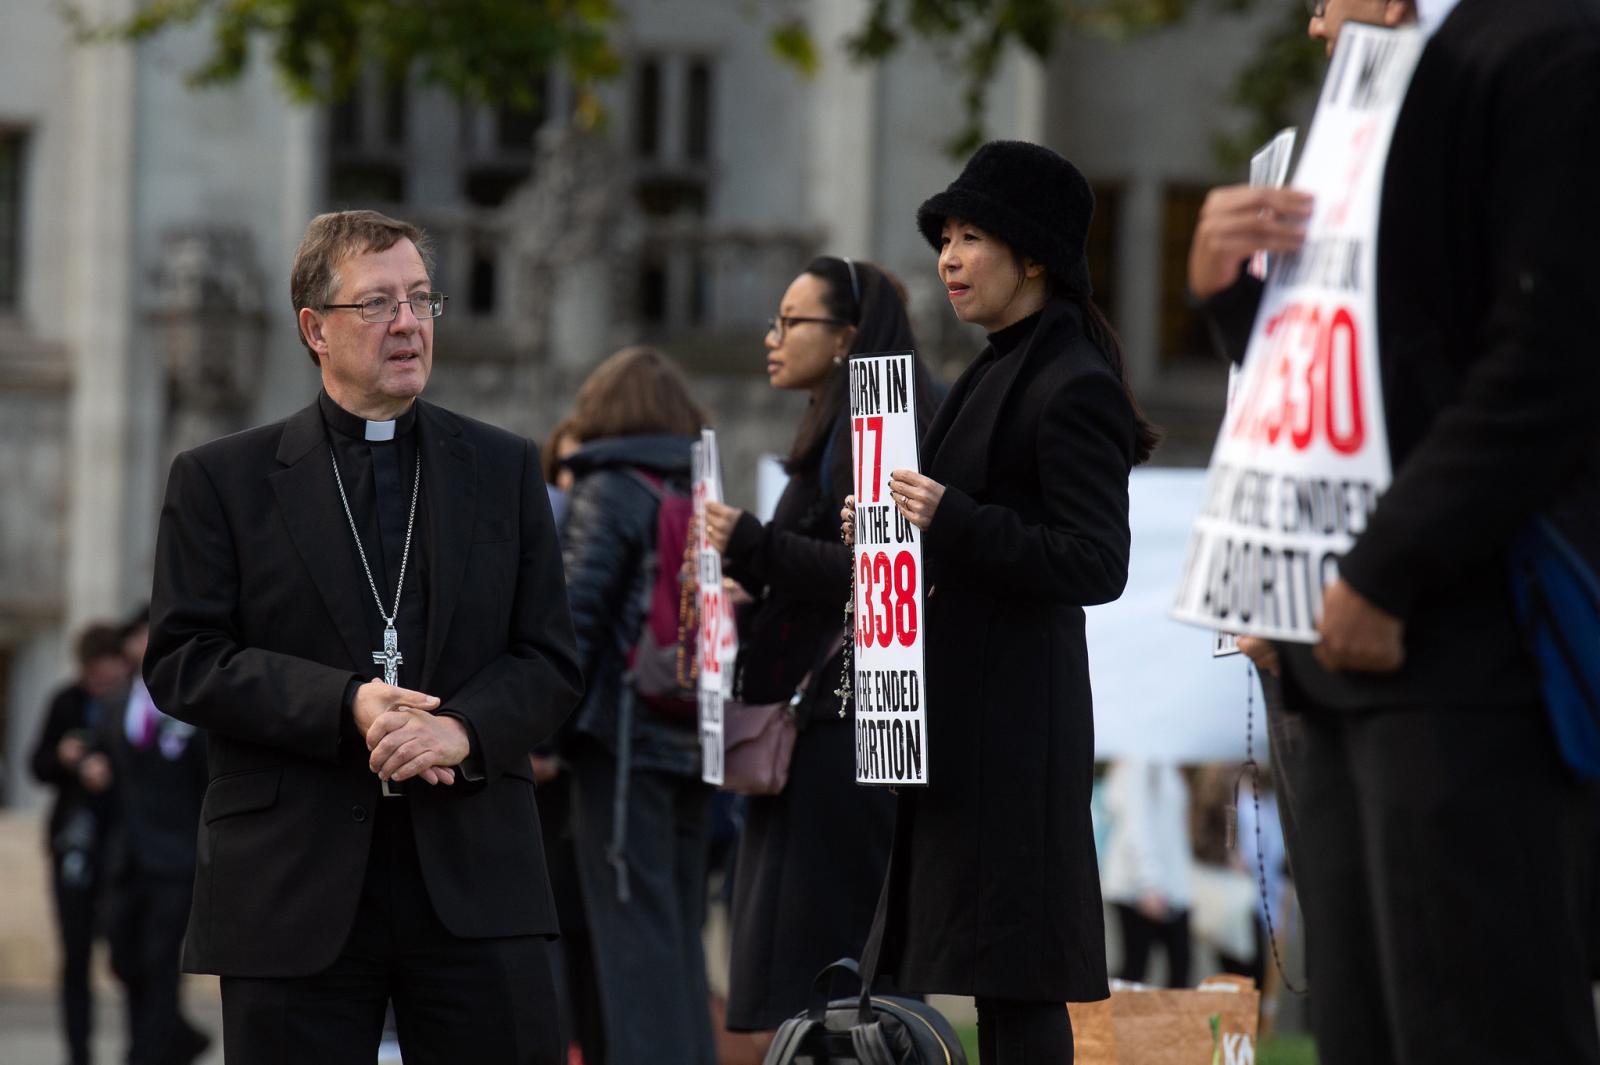 Bishop Sherrington comments on Roe v Wade - Diocese of Westminster